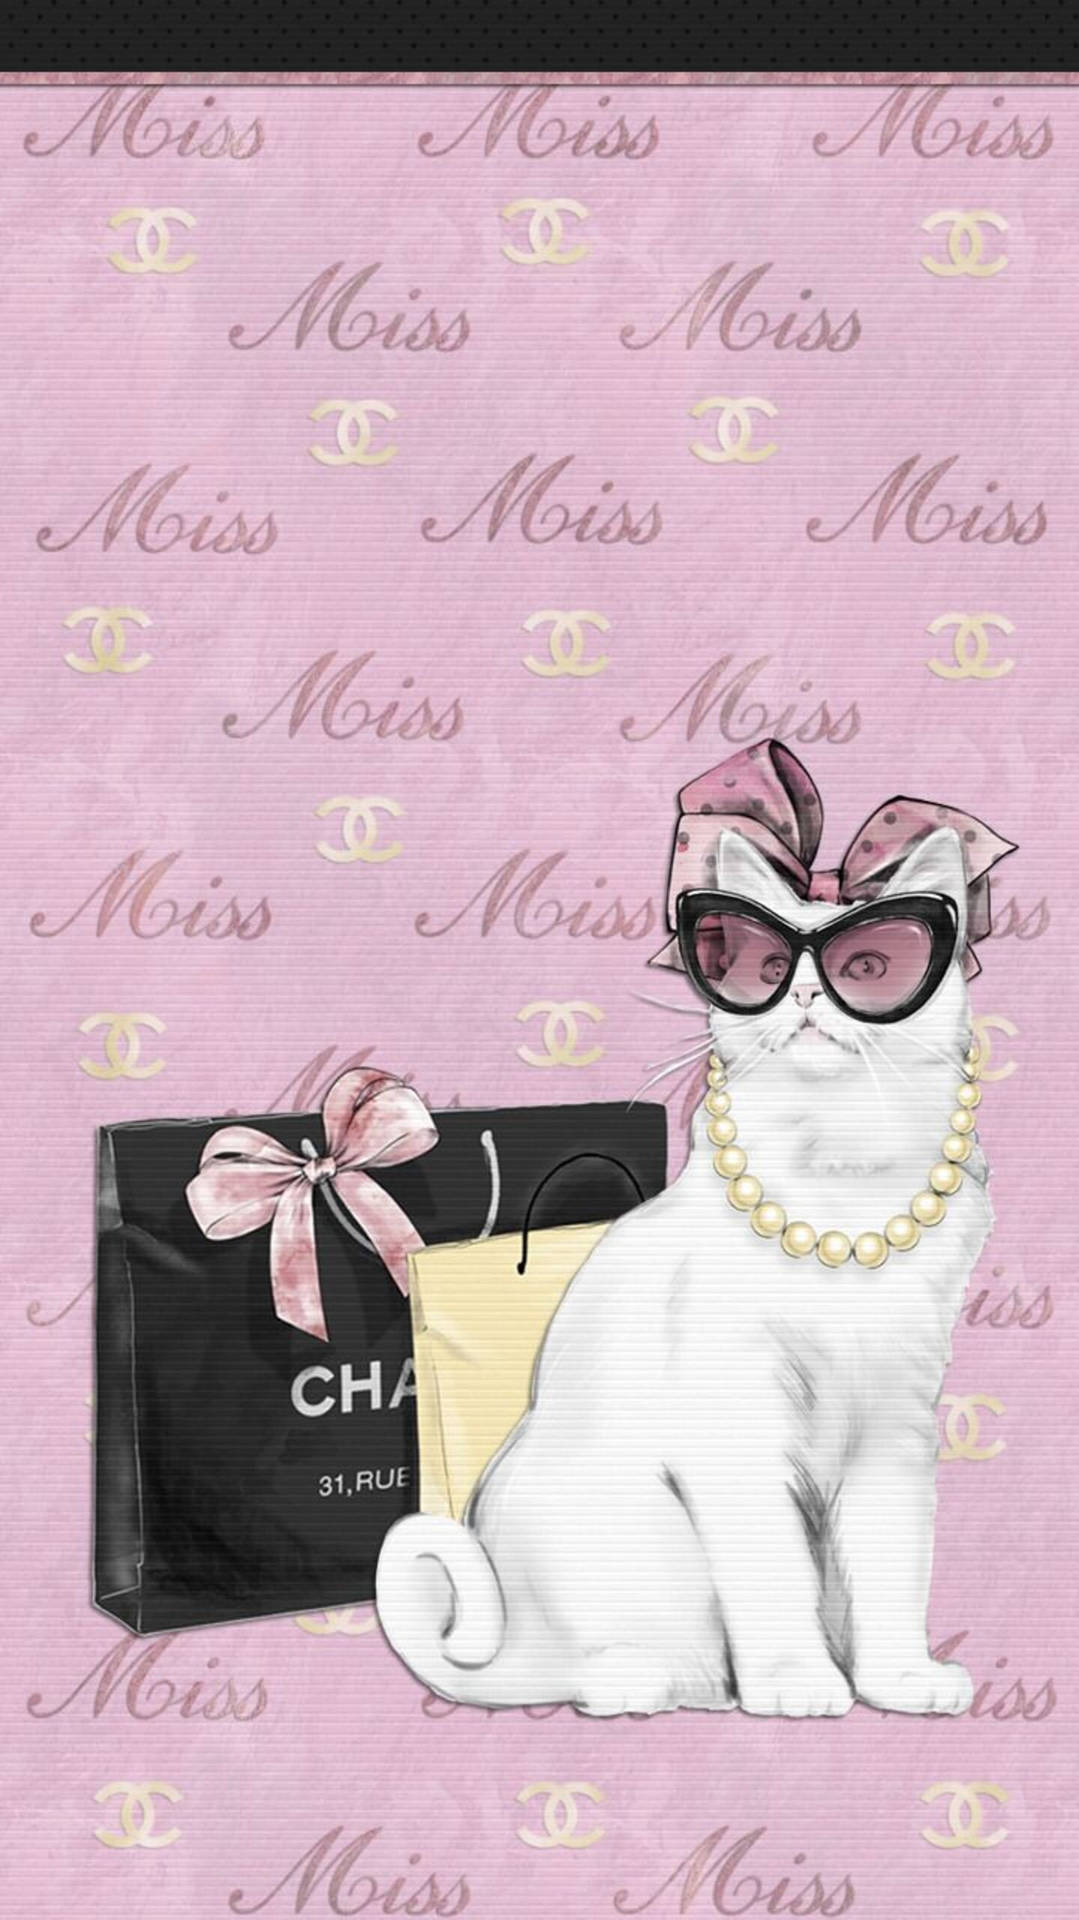 Siehsuper Schick Aus In Einem Weißen Outfit Mit Katzenmotiv Von Chanel. Wallpaper